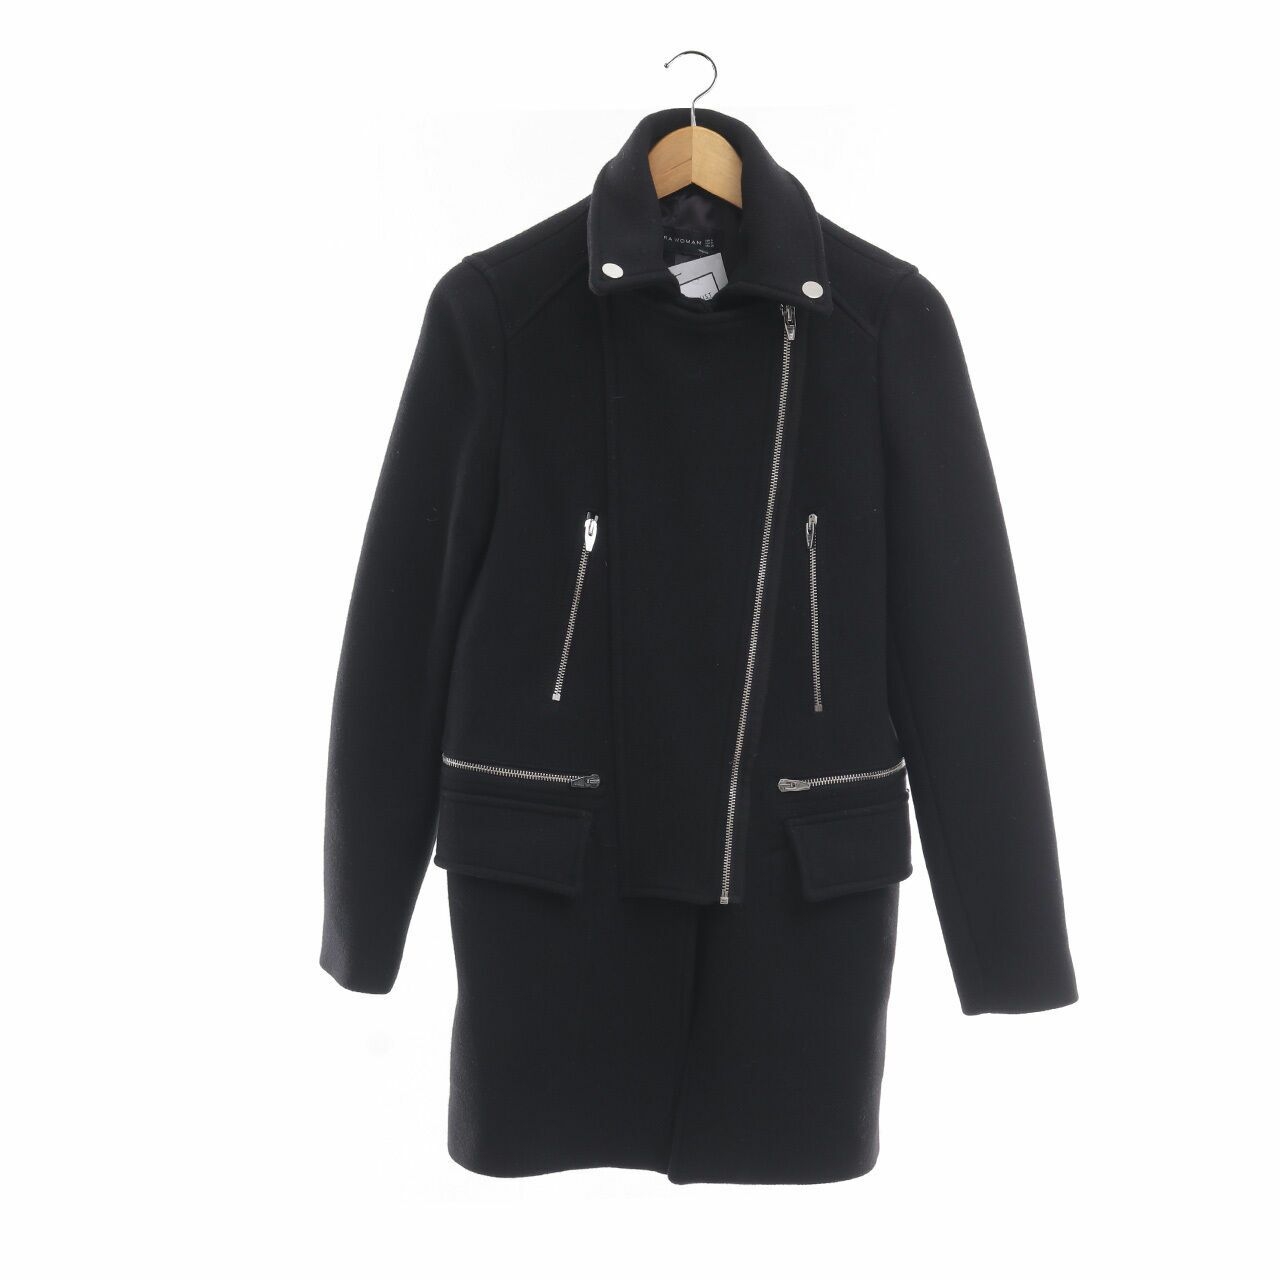 Zara Black Zipper Coat